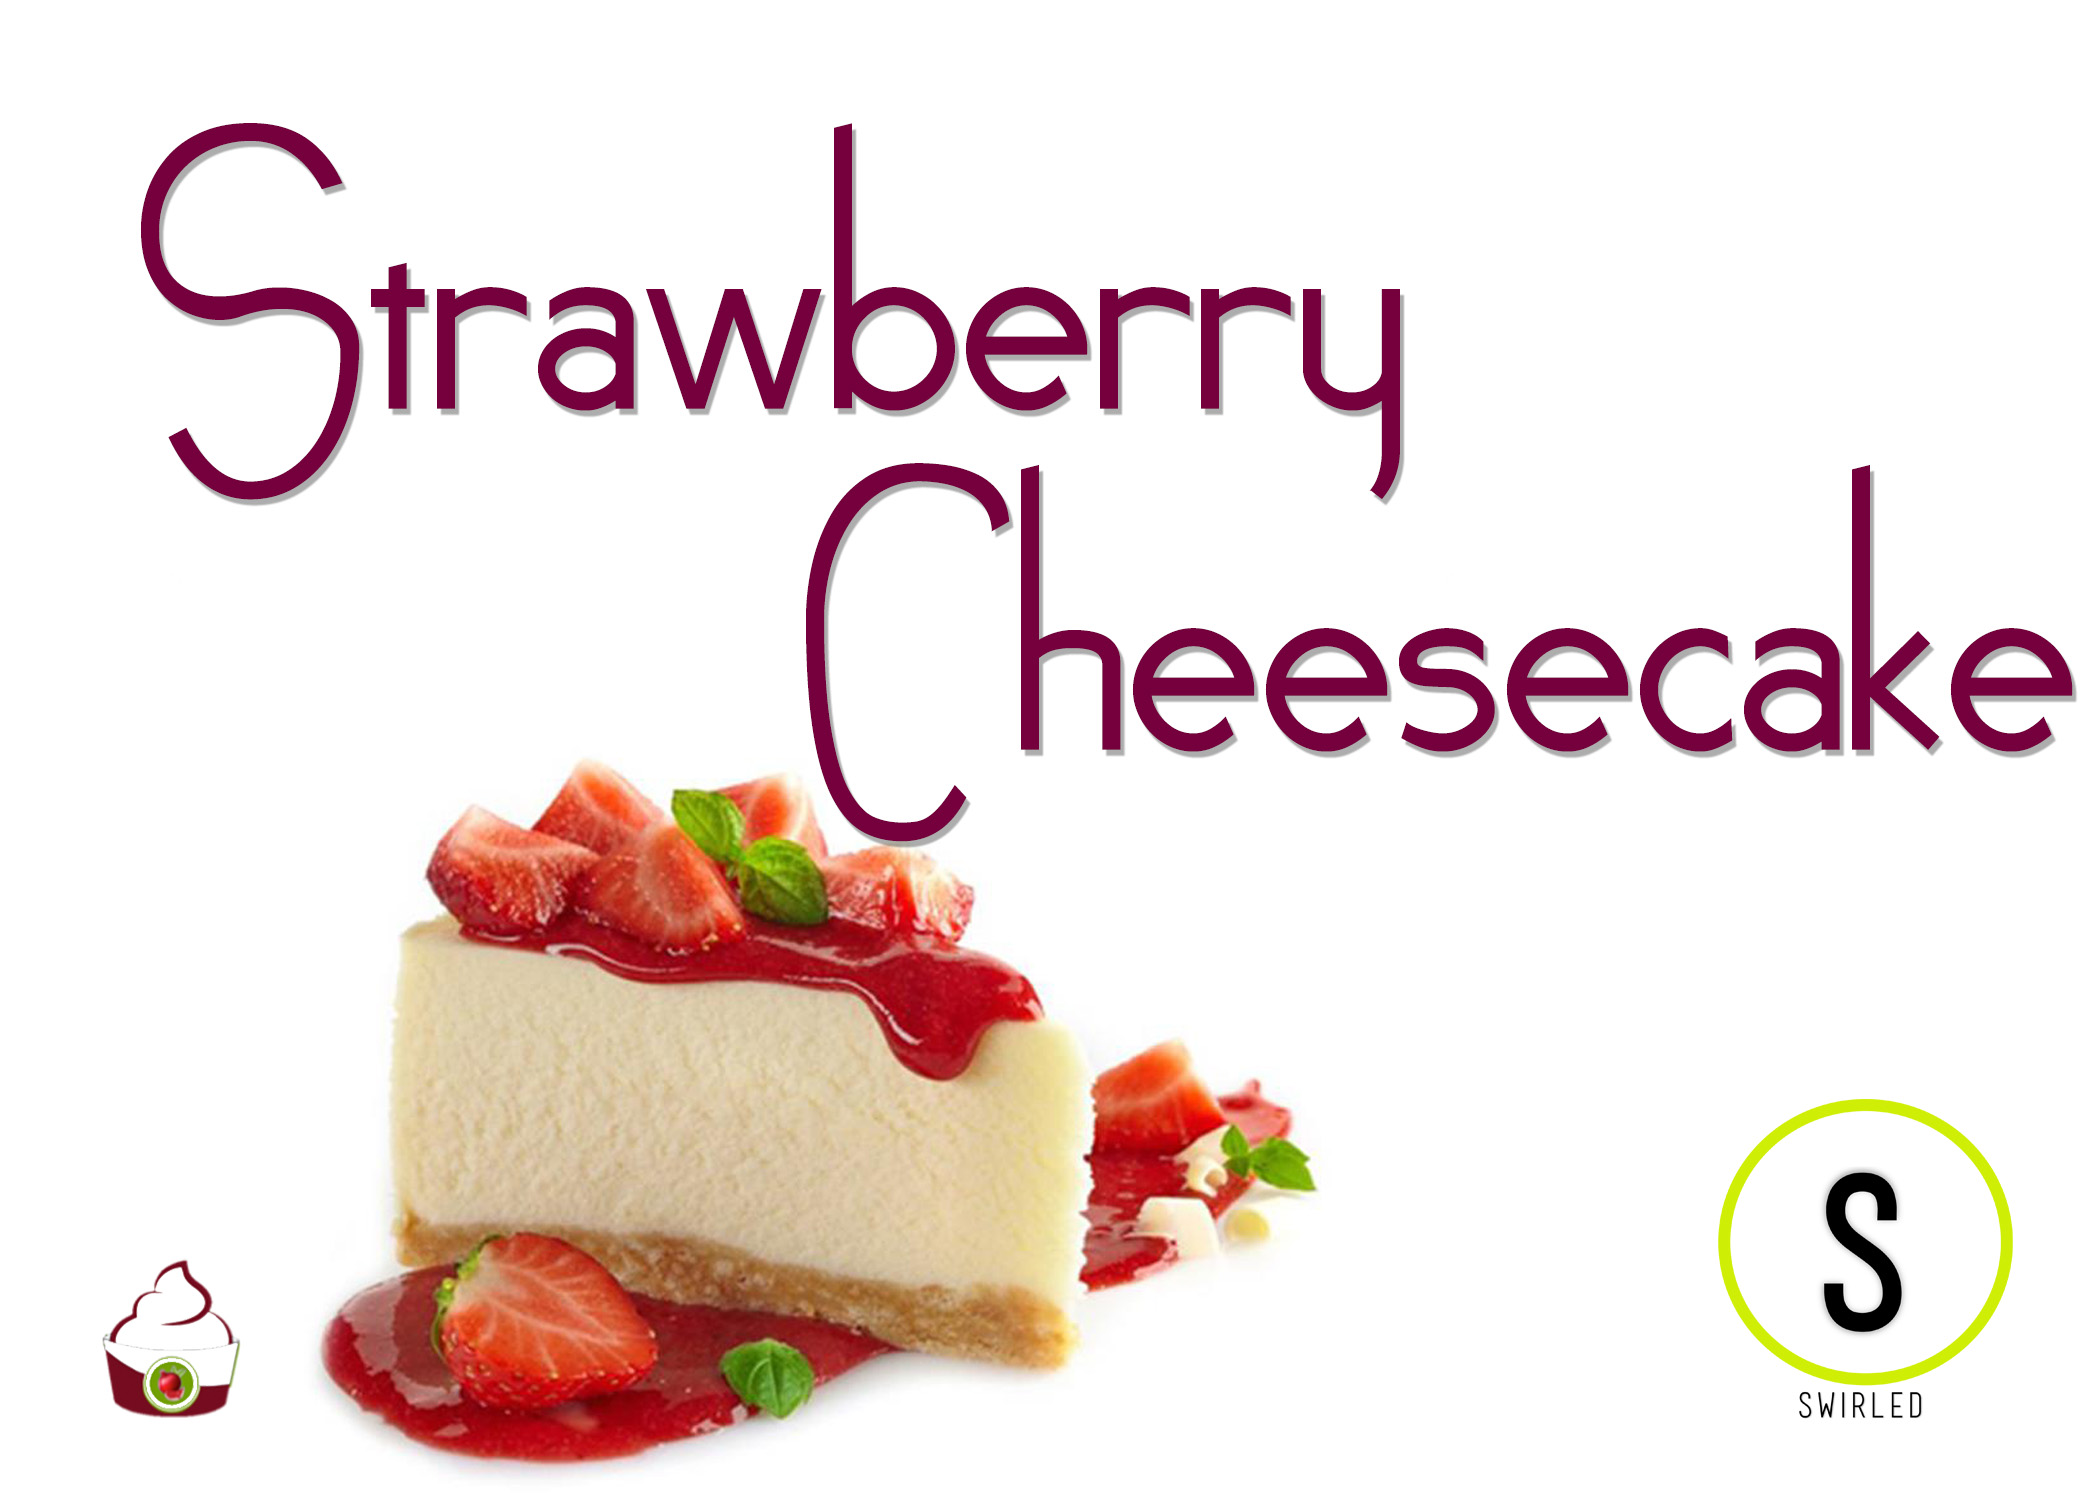 strawberry cheesecake.jpg